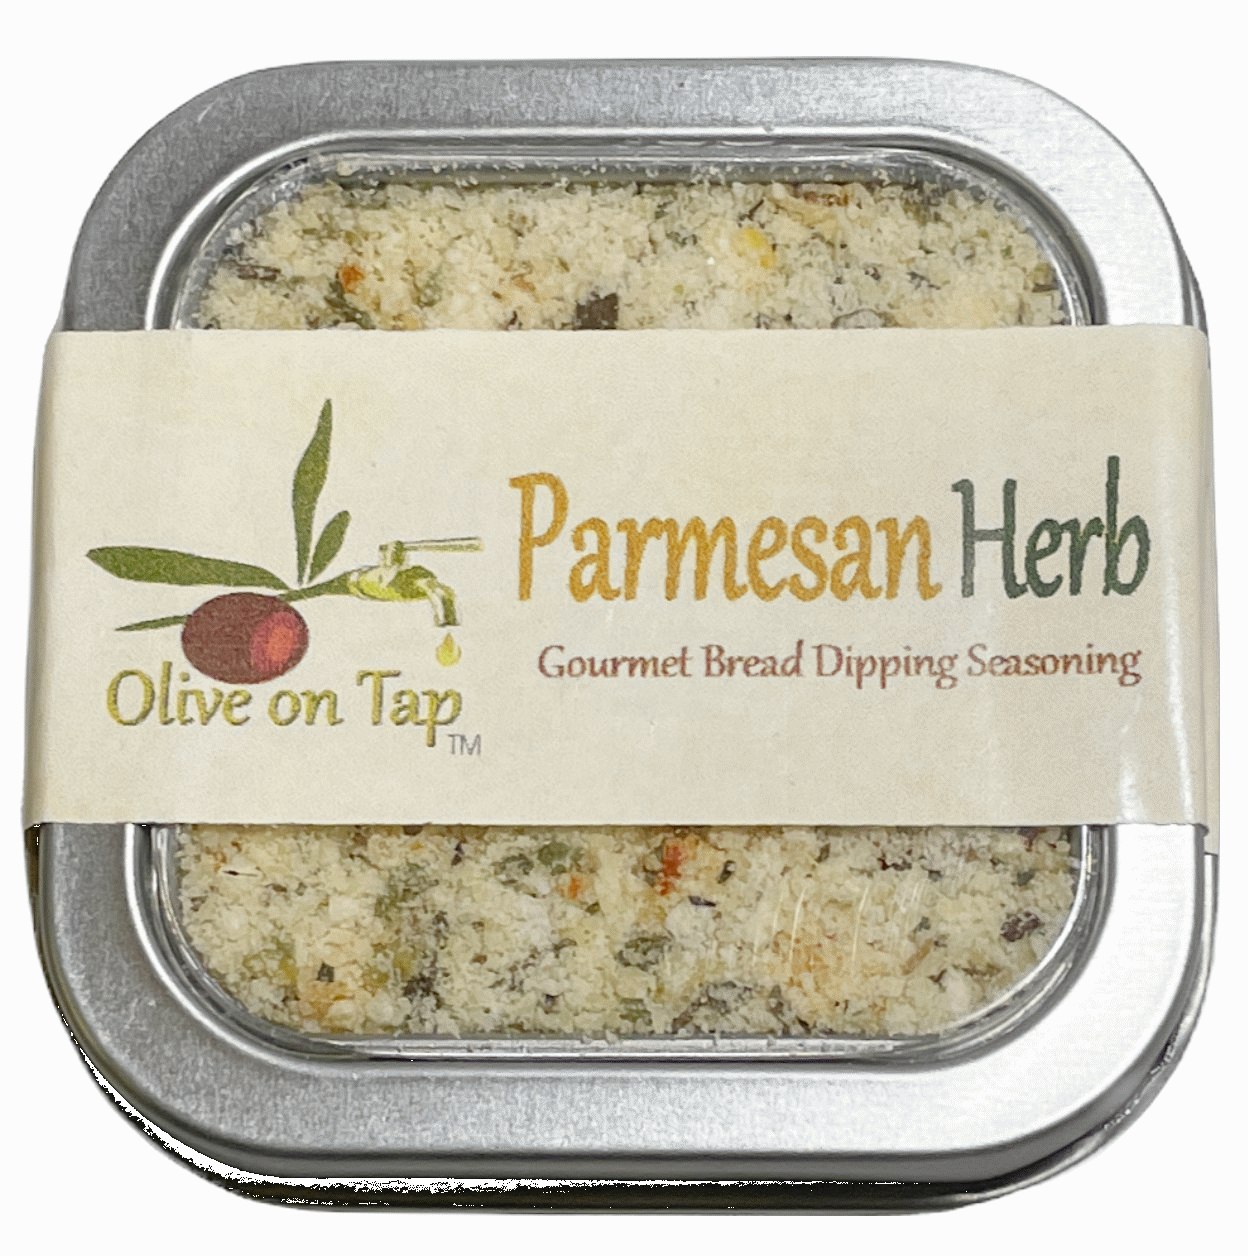 Olive on Tap Parmesan Herb Dipping Seasoning